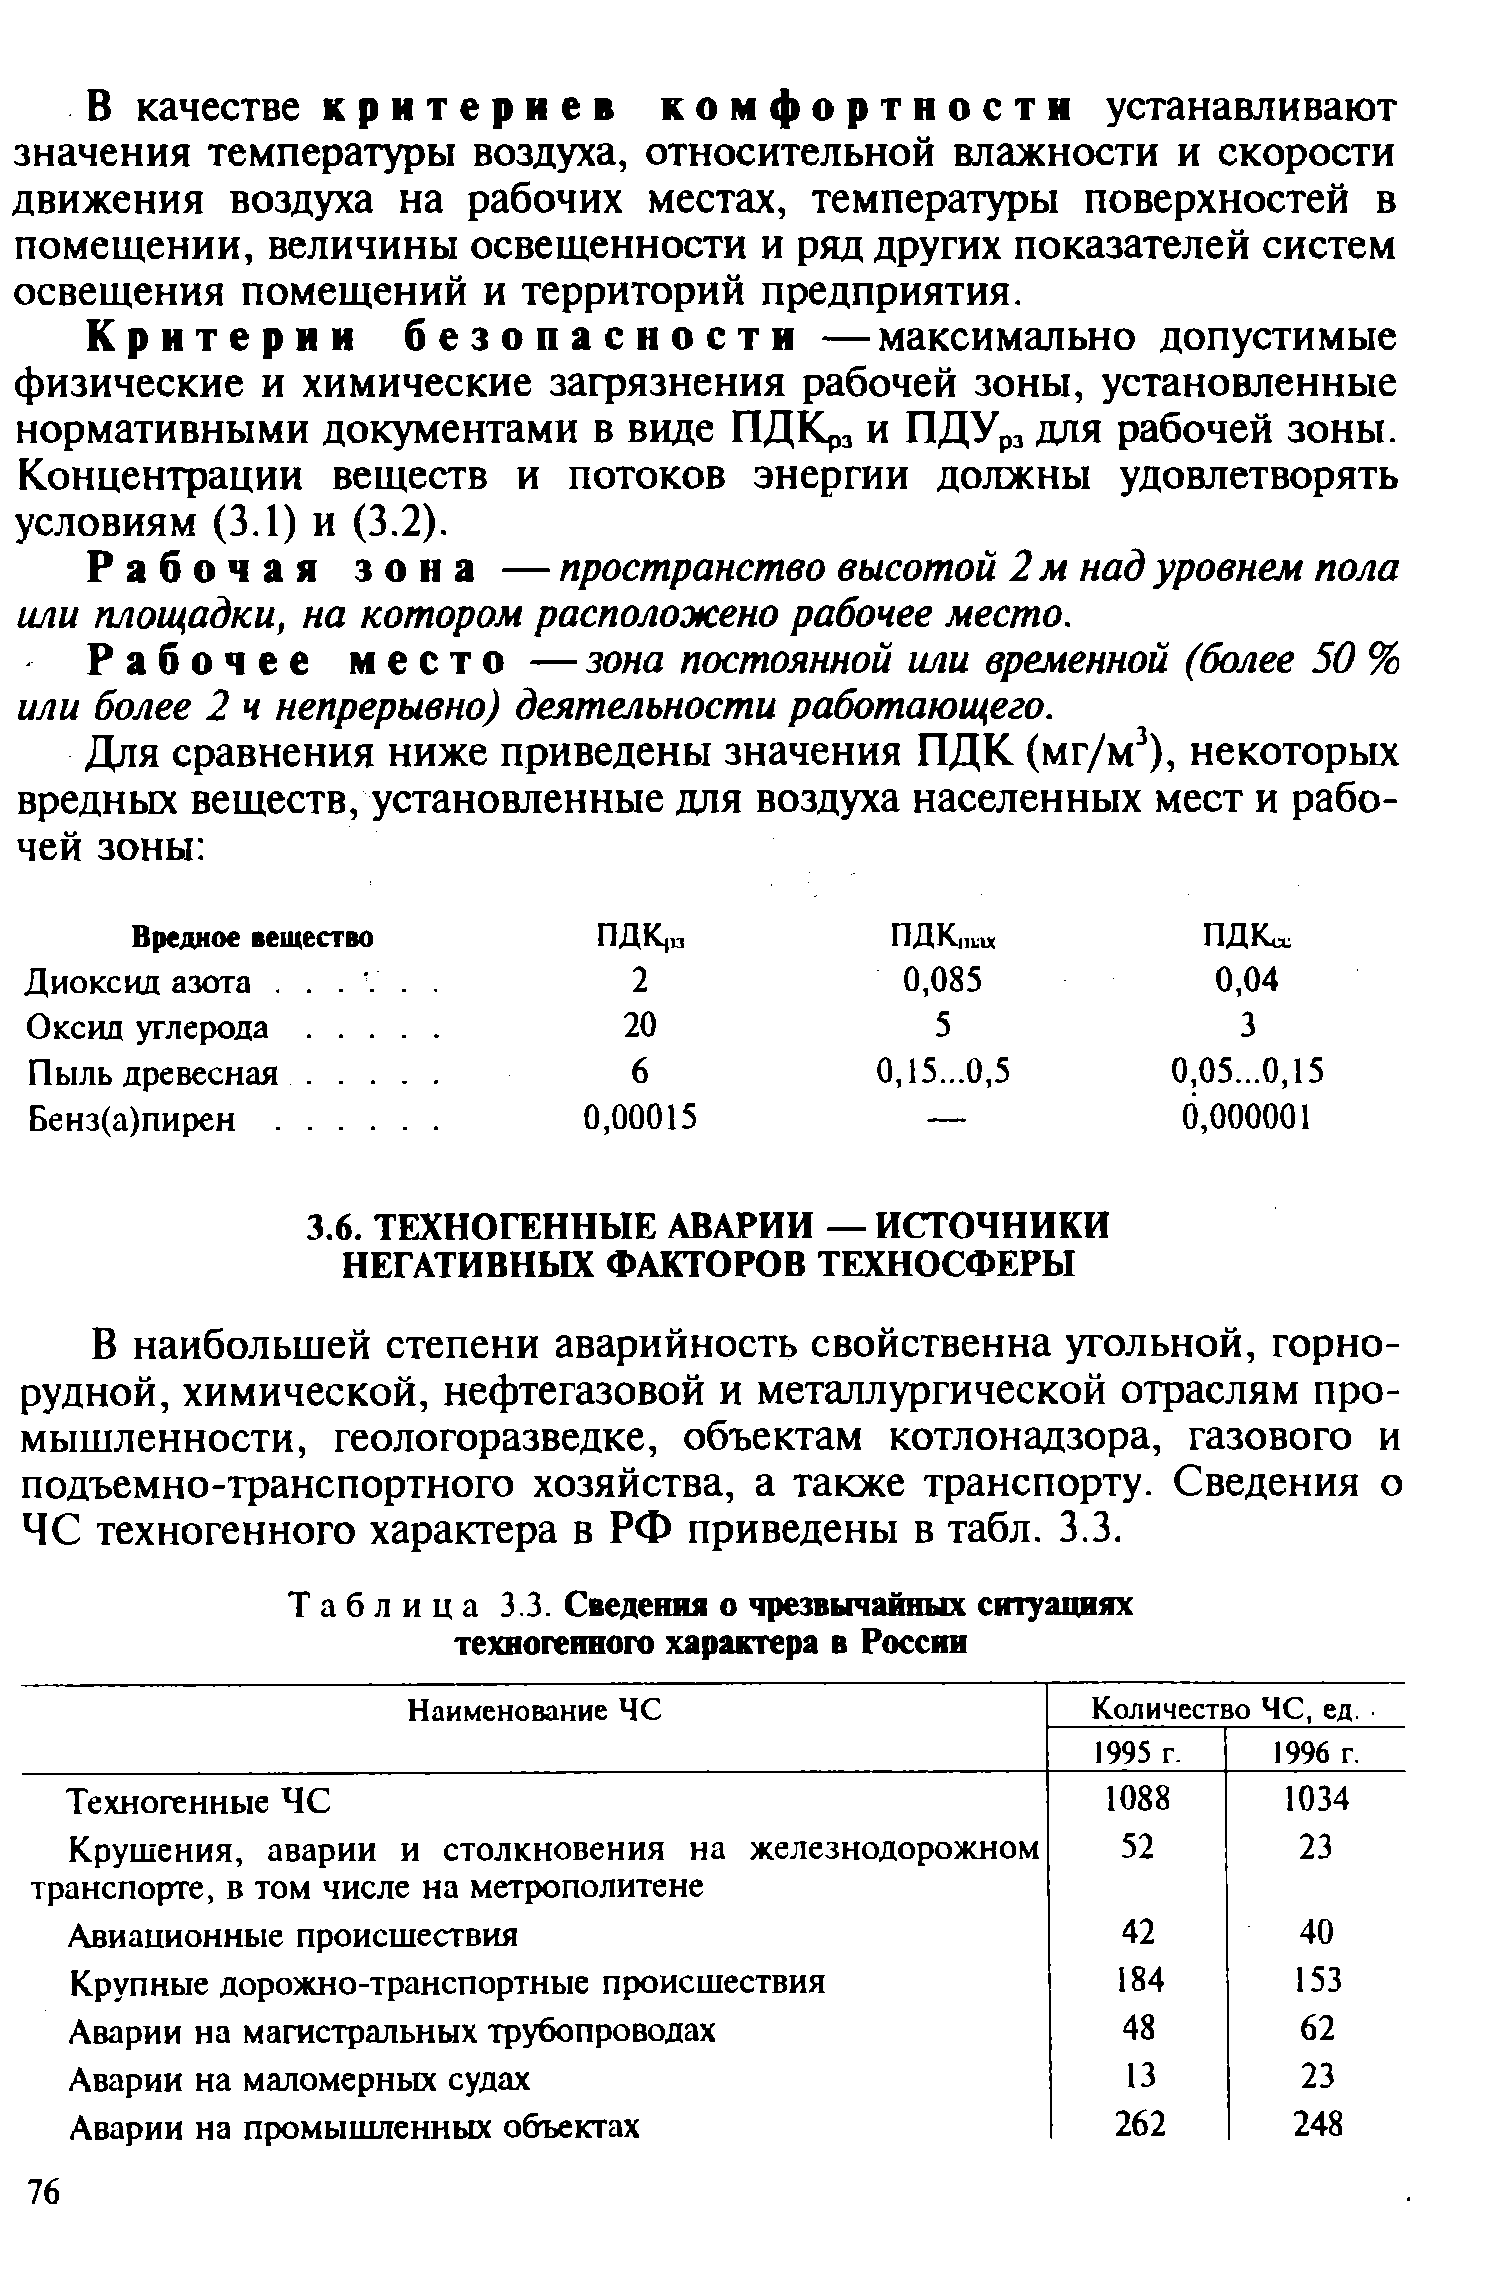 Таблица 3.3. Сведения о <a href="/info/129837">чрезвычайных ситуациях техногенного характера</a> в России